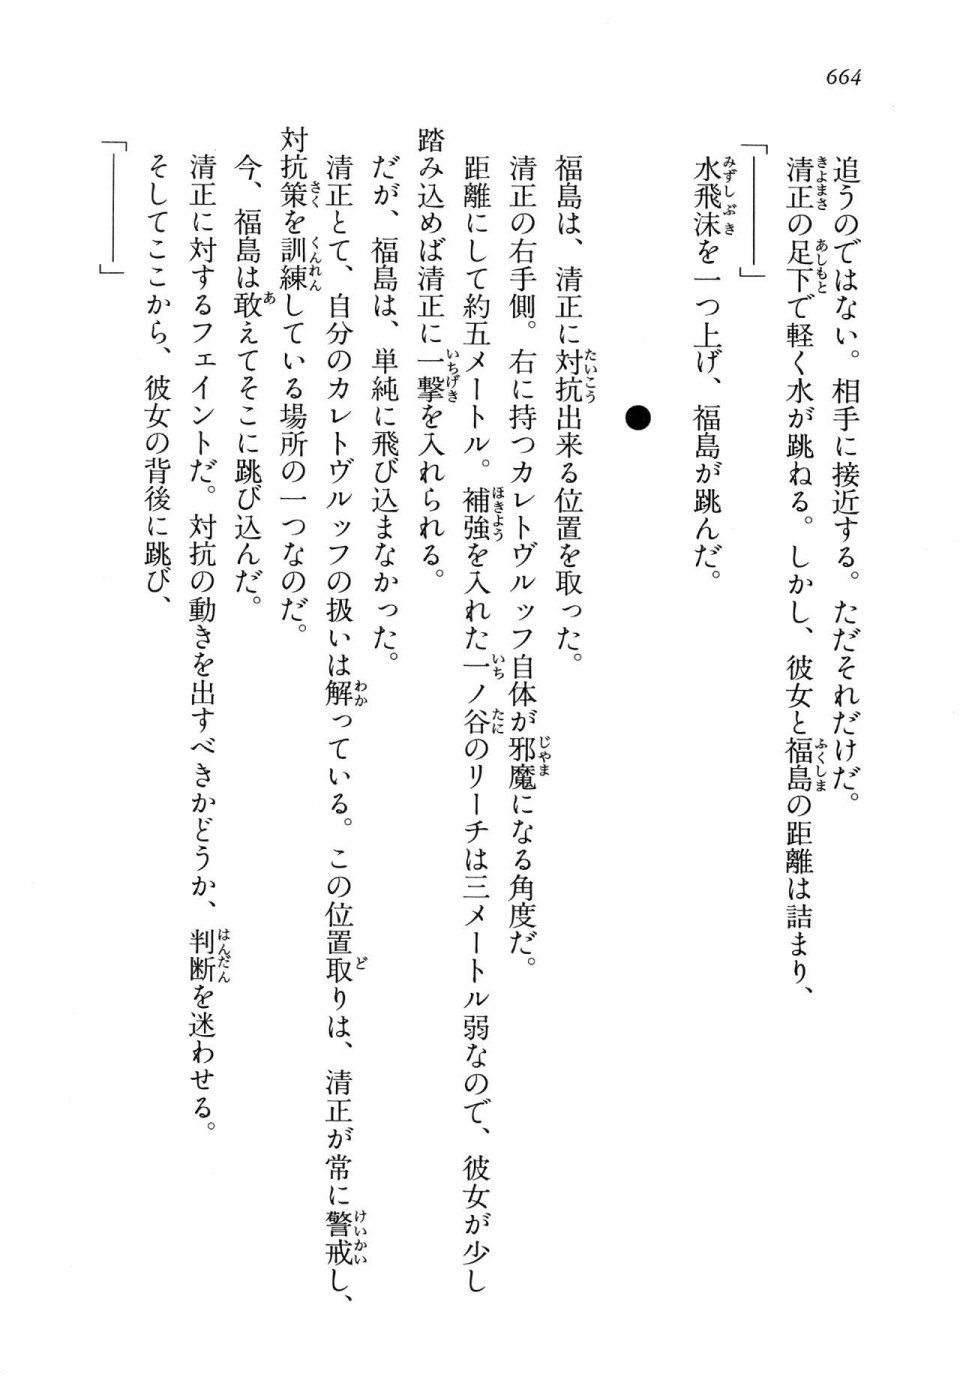 Kyoukai Senjou no Horizon LN Vol 14(6B) - Photo #664